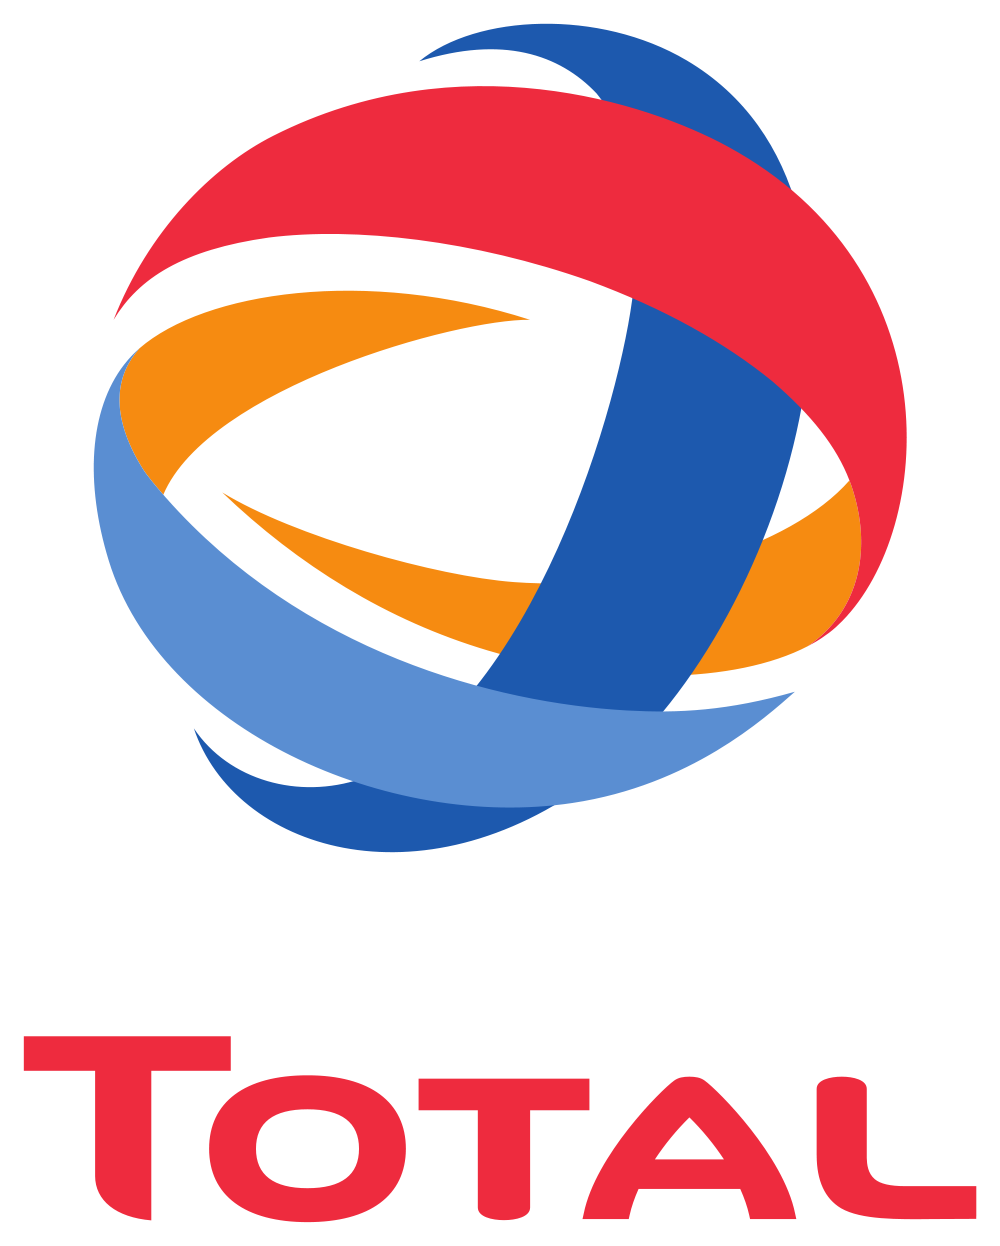 Логотип Total